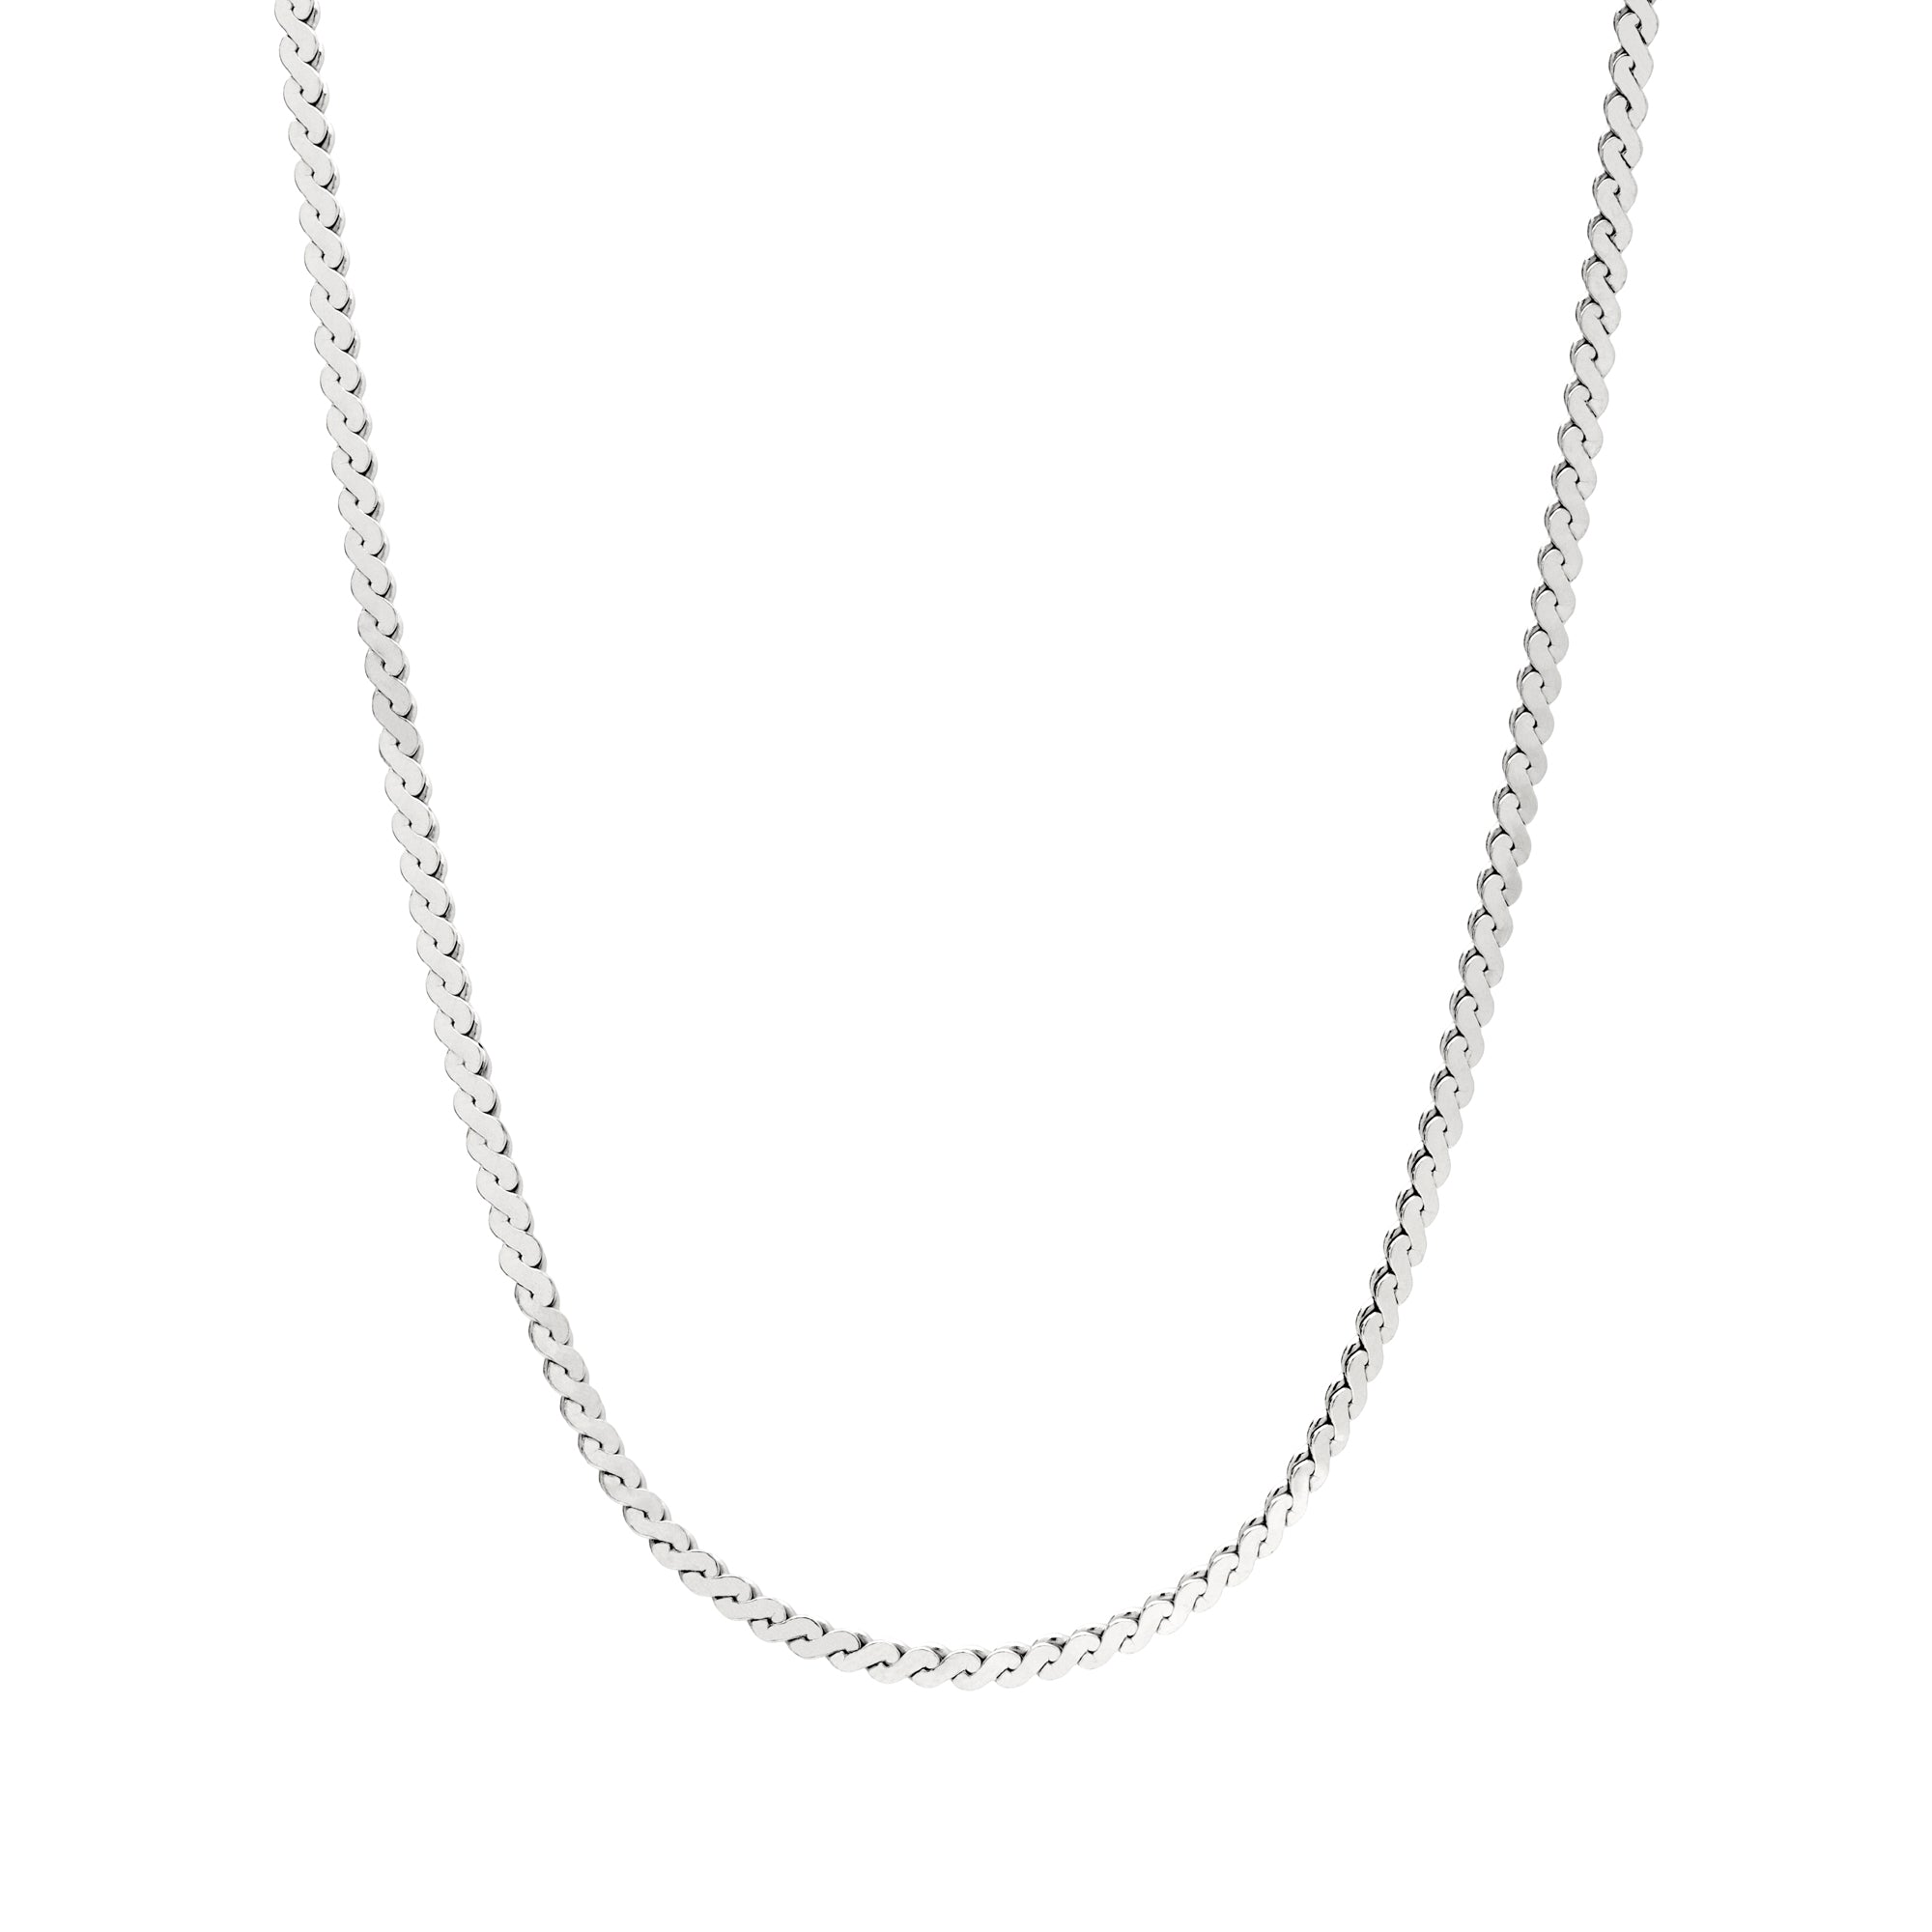 Serpentine chain necklace